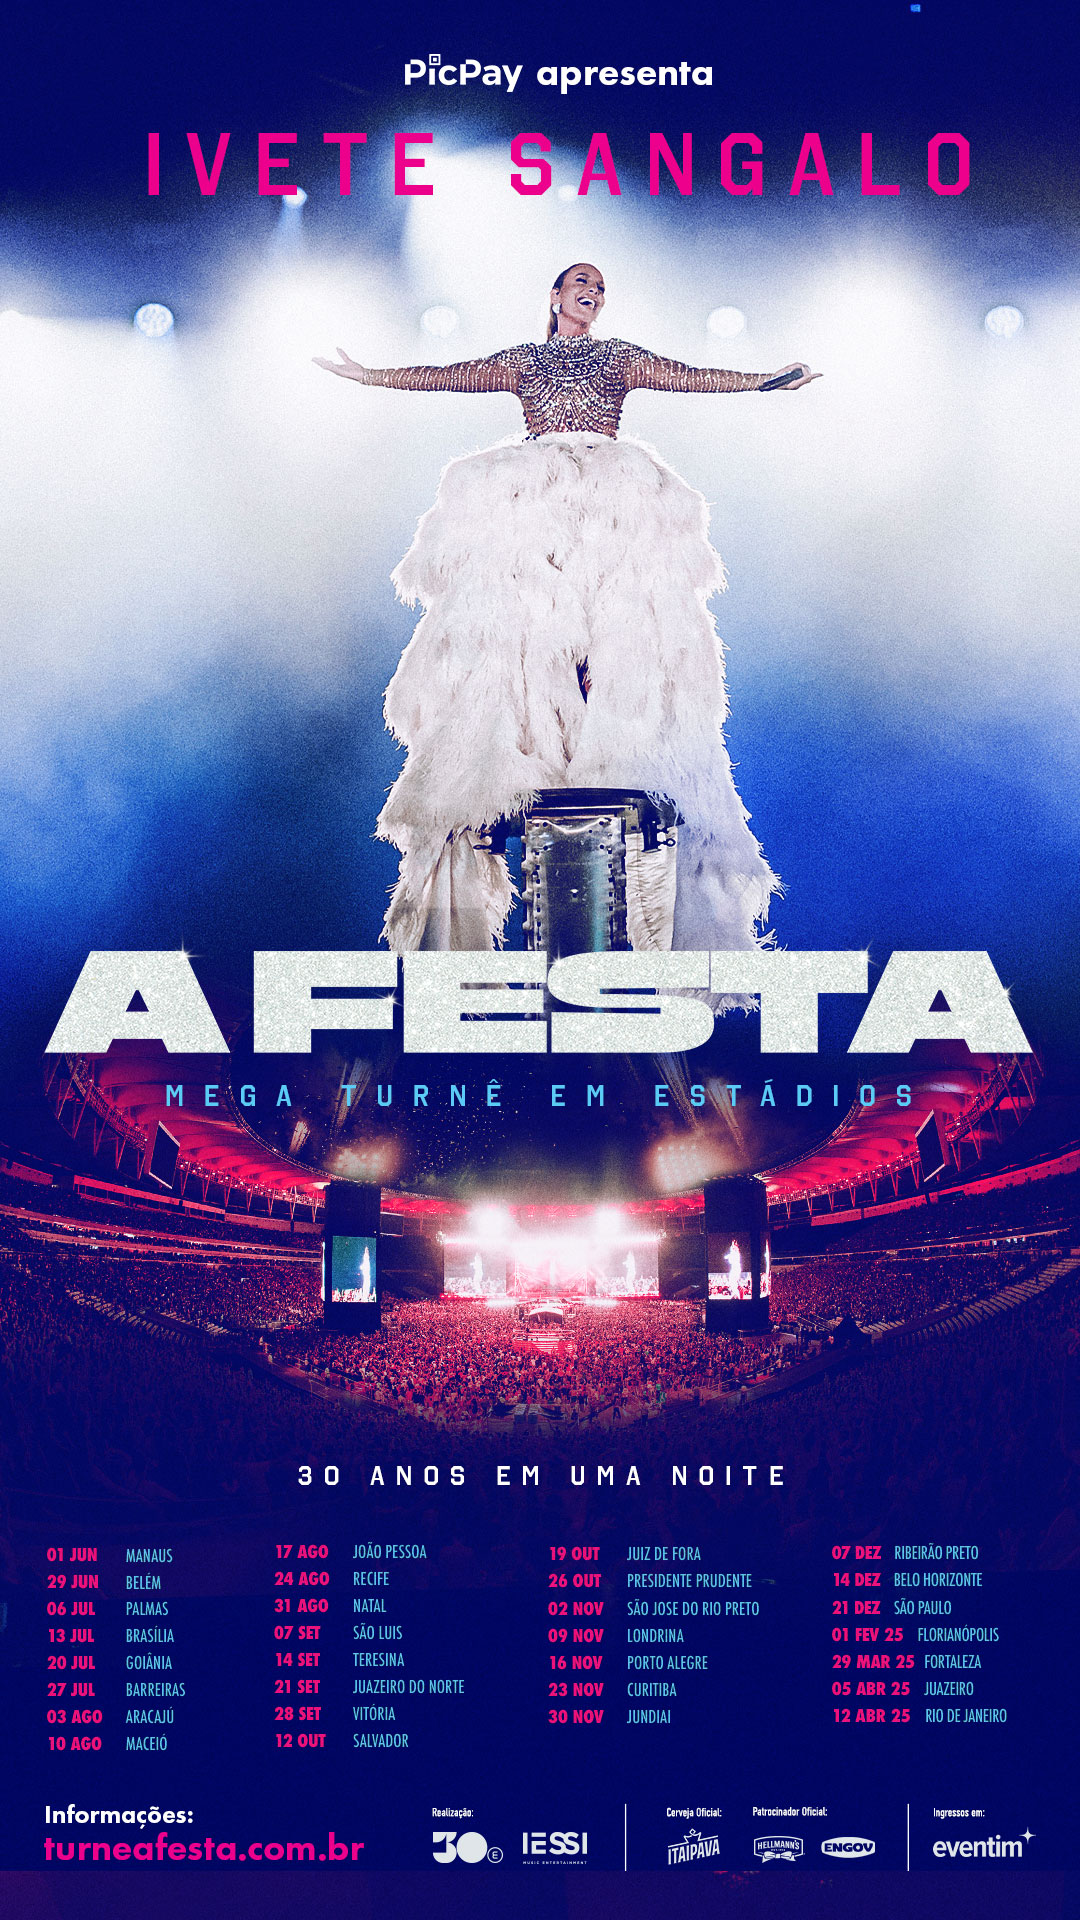 Ivete Sangalo anuncia A FESTA, a mega turnê em estádios, que celebra seus 30 anos de carreira